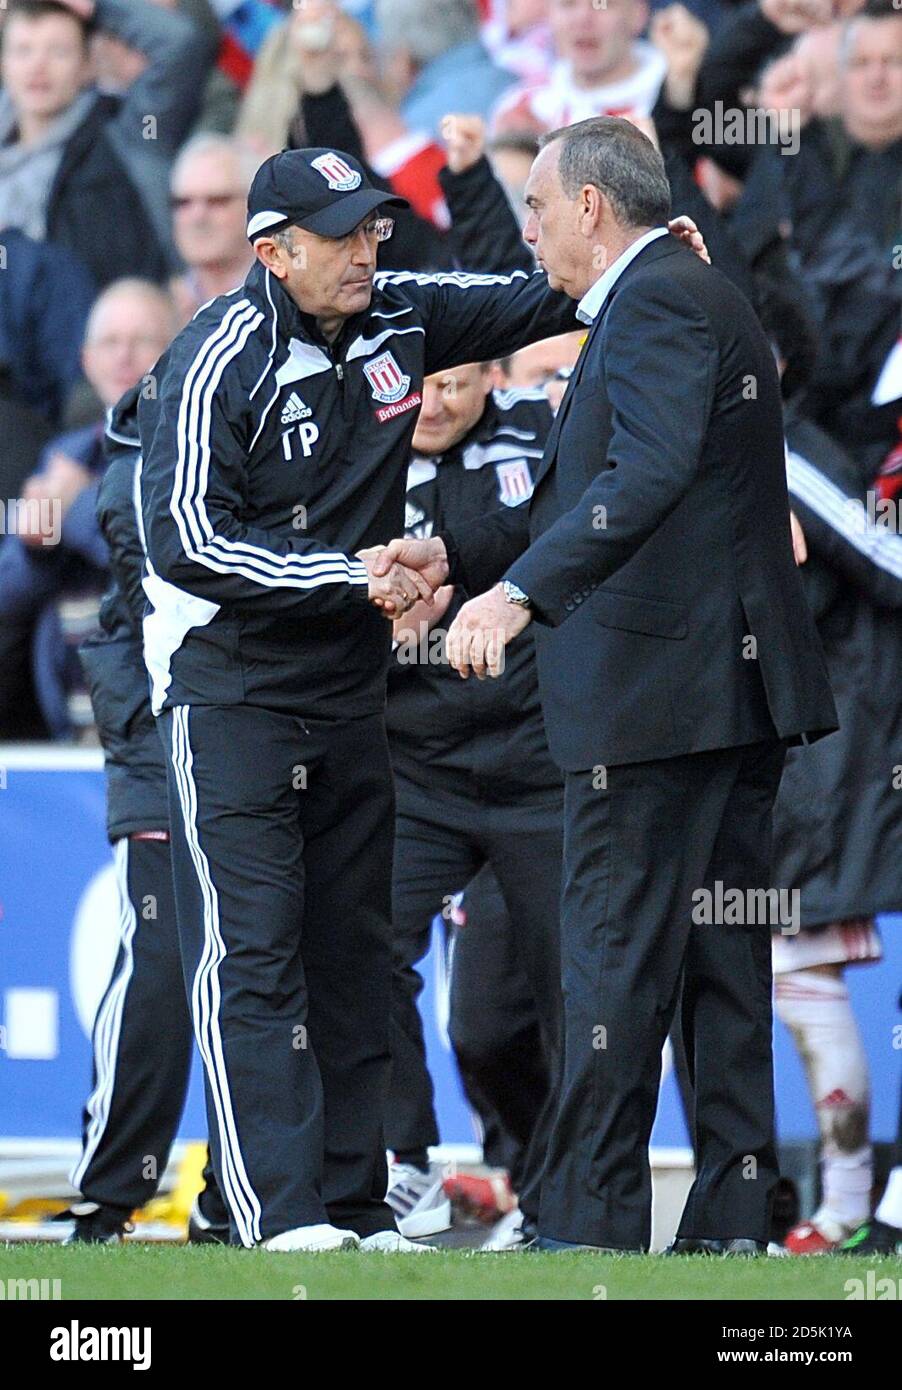 Le directeur de la ville de Stoke, Tony Puis (à gauche), et le directeur de West Ham United, Avram Grant, se secouent la main après le coup de sifflet final. Banque D'Images